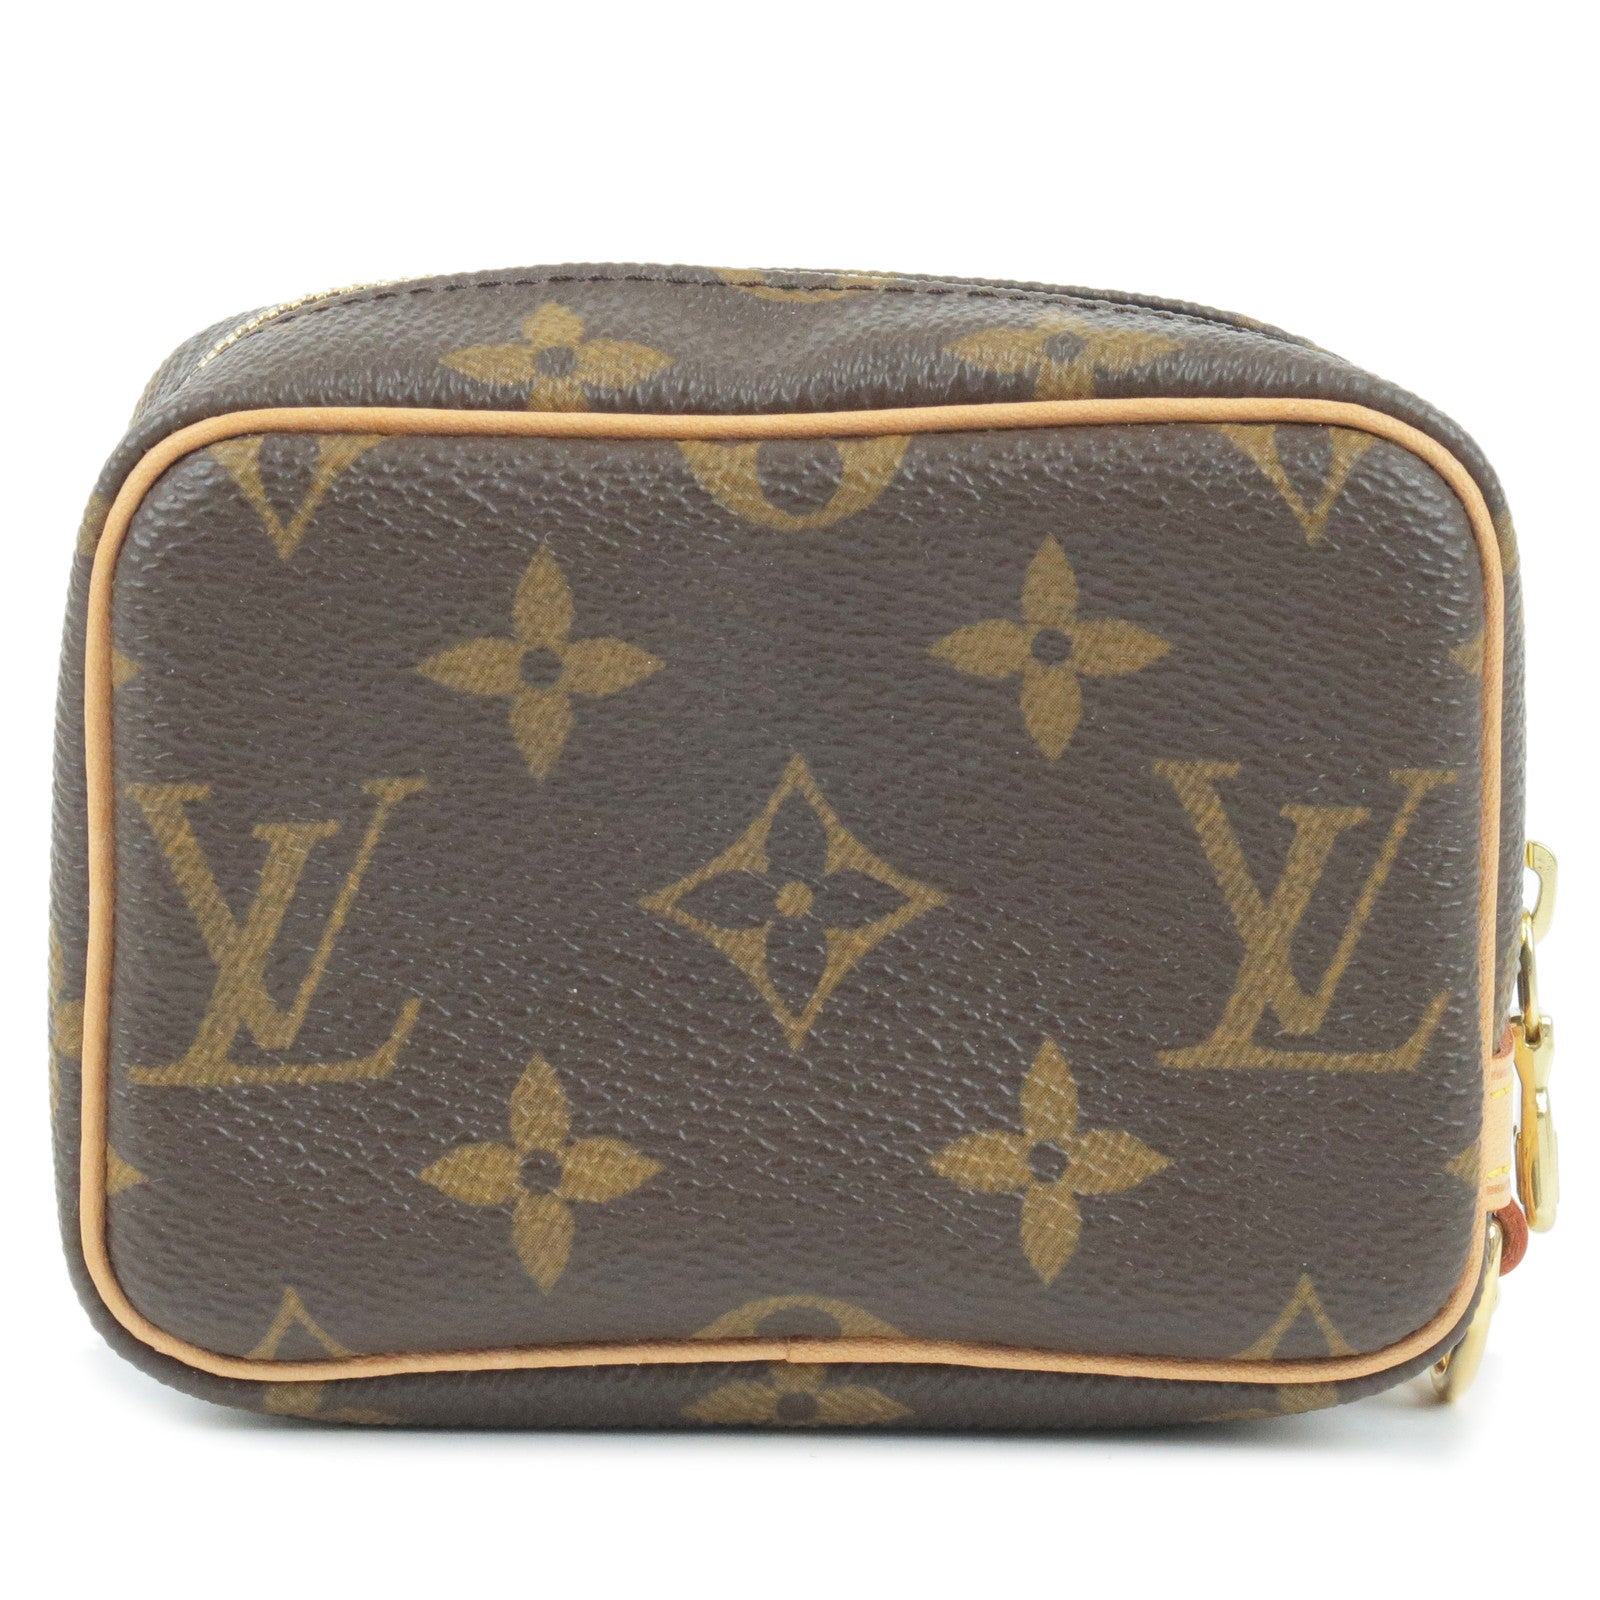 Louis-Vuitton-Monogram-Trousse-Wapity-Pouch-Camera-Case-M58030